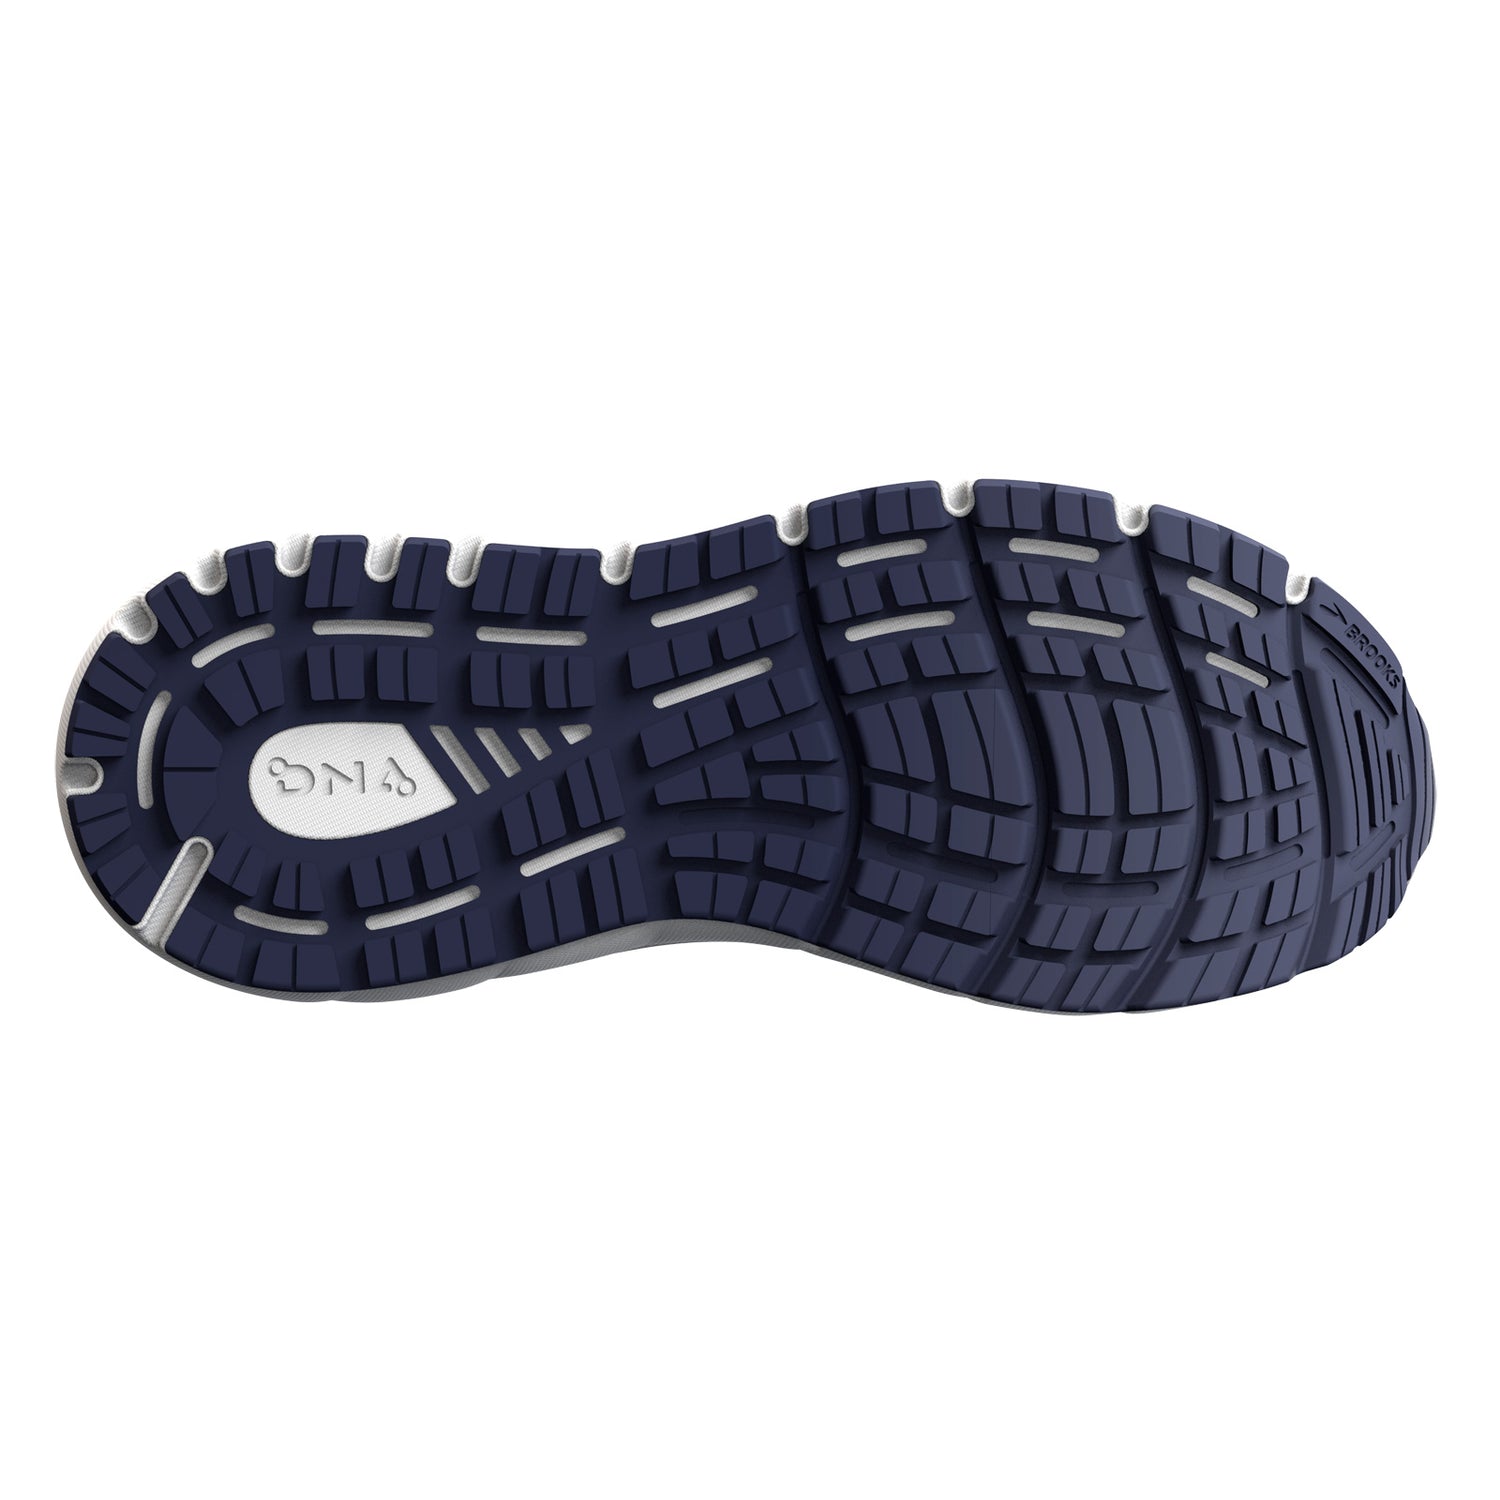 Peltz Shoes  Women's Brooks Addiction GTS 15 Running Shoe - Narrow Width Oyster/Rose 120352 2A 054